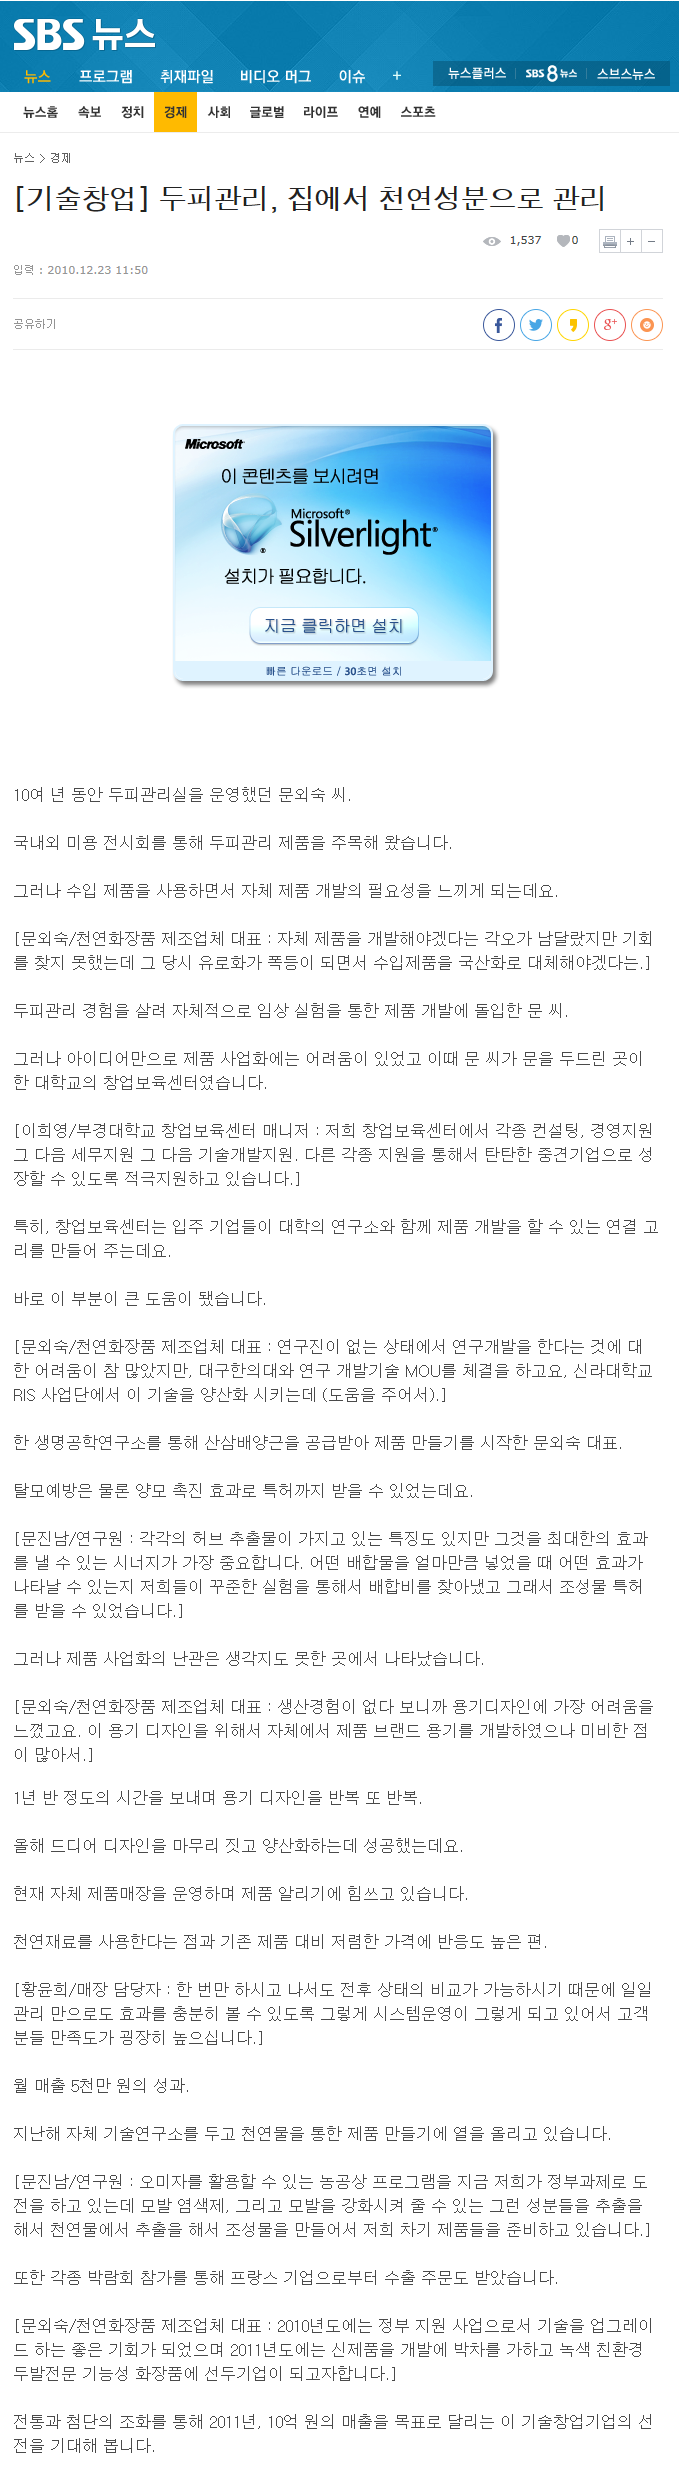 [SBS뉴스] 2010.12.23 기술창업 - 두피관리, 집에서 천연성분으로 관리